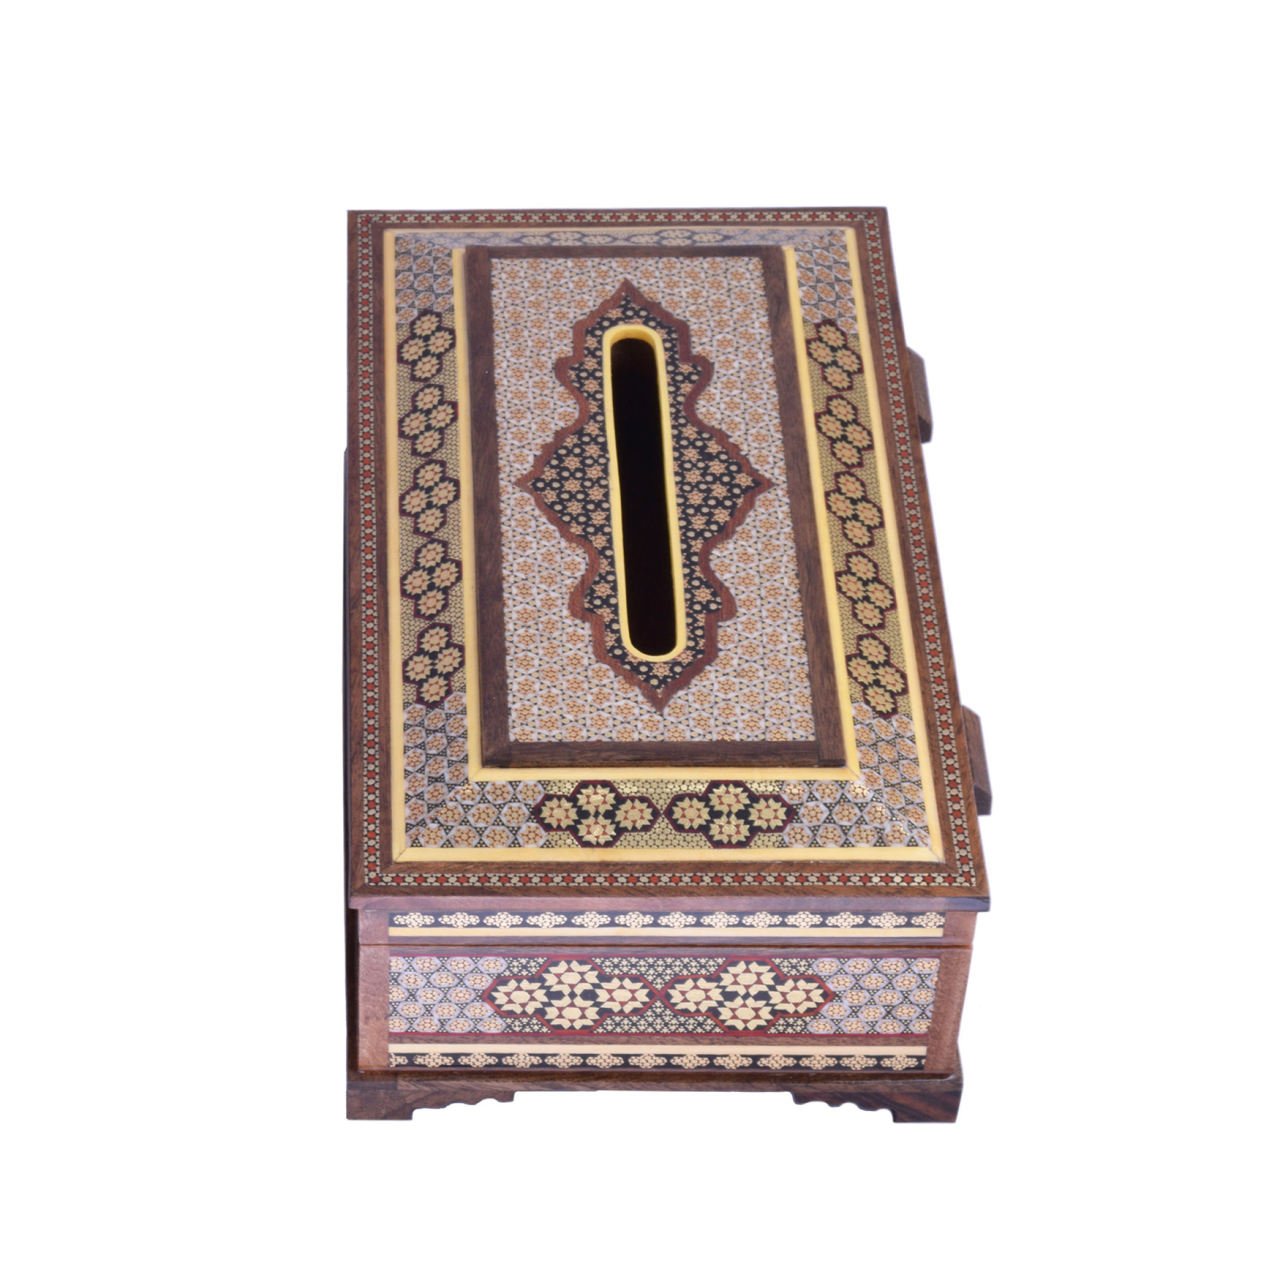 Khatam Tissue Box Model Cottage Code 010005 , Khatam Tissue, Inlaid, Khatam Tissue Box, Khatam